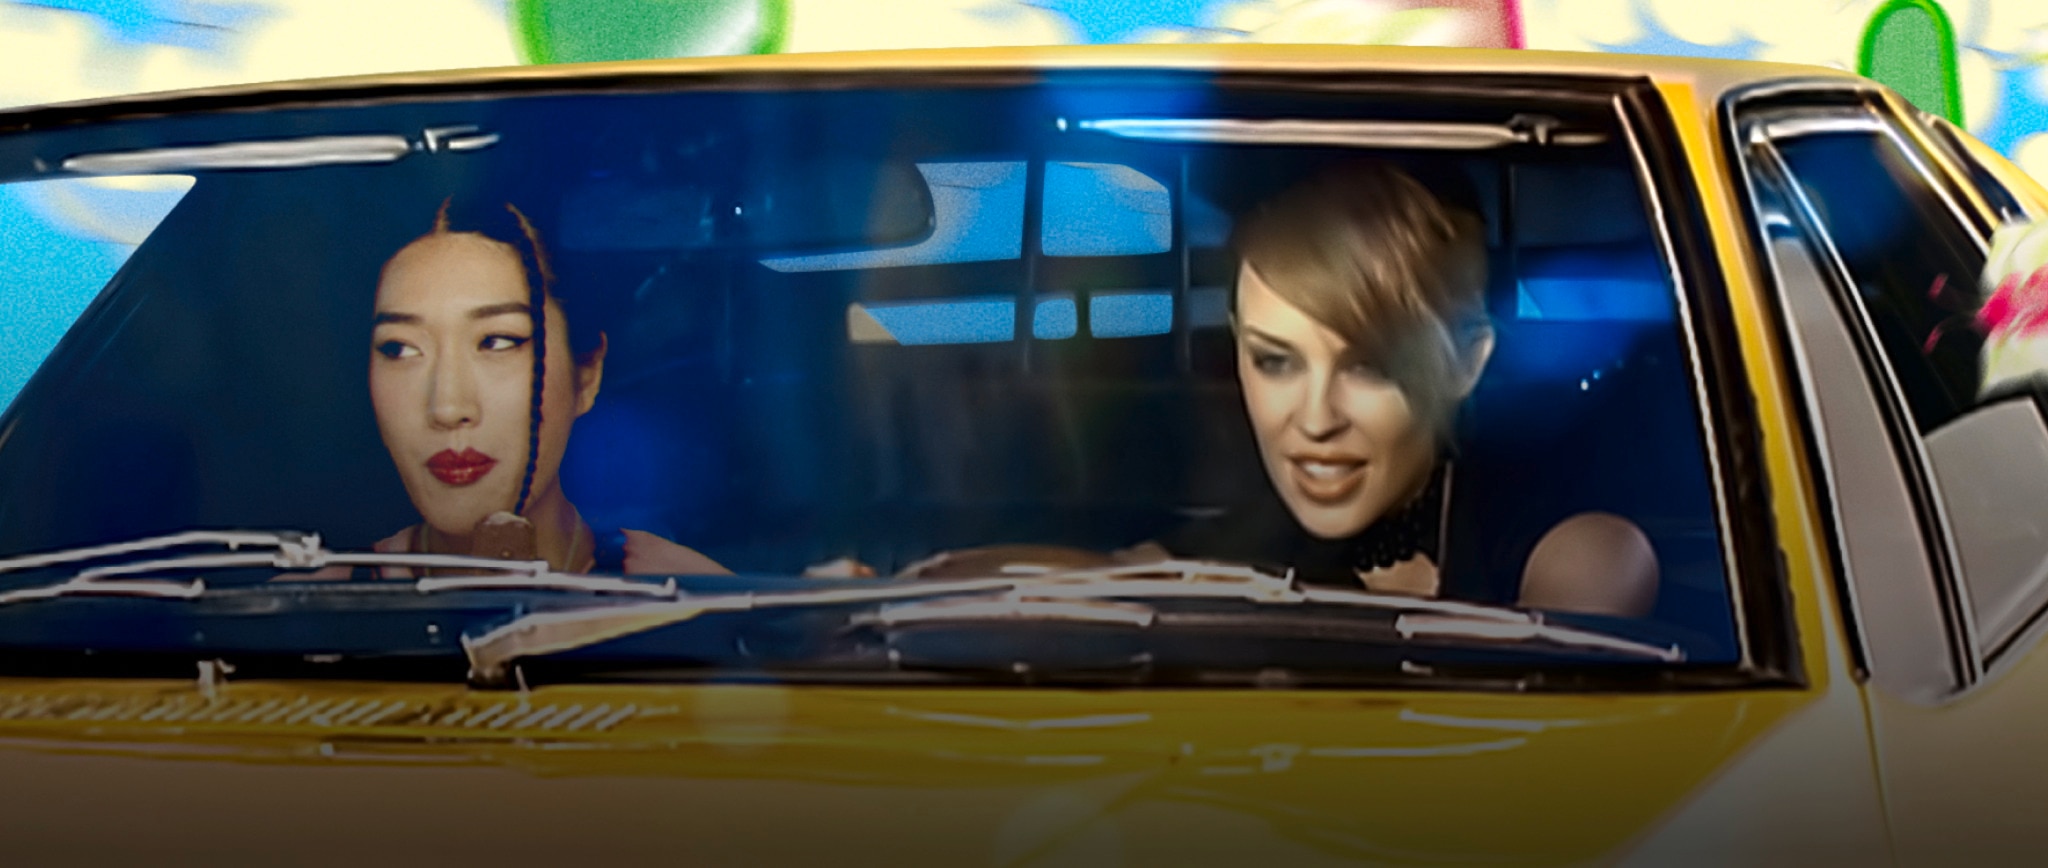 Peggy Gou & Kylie Minogue dans la voiture jaune iconique